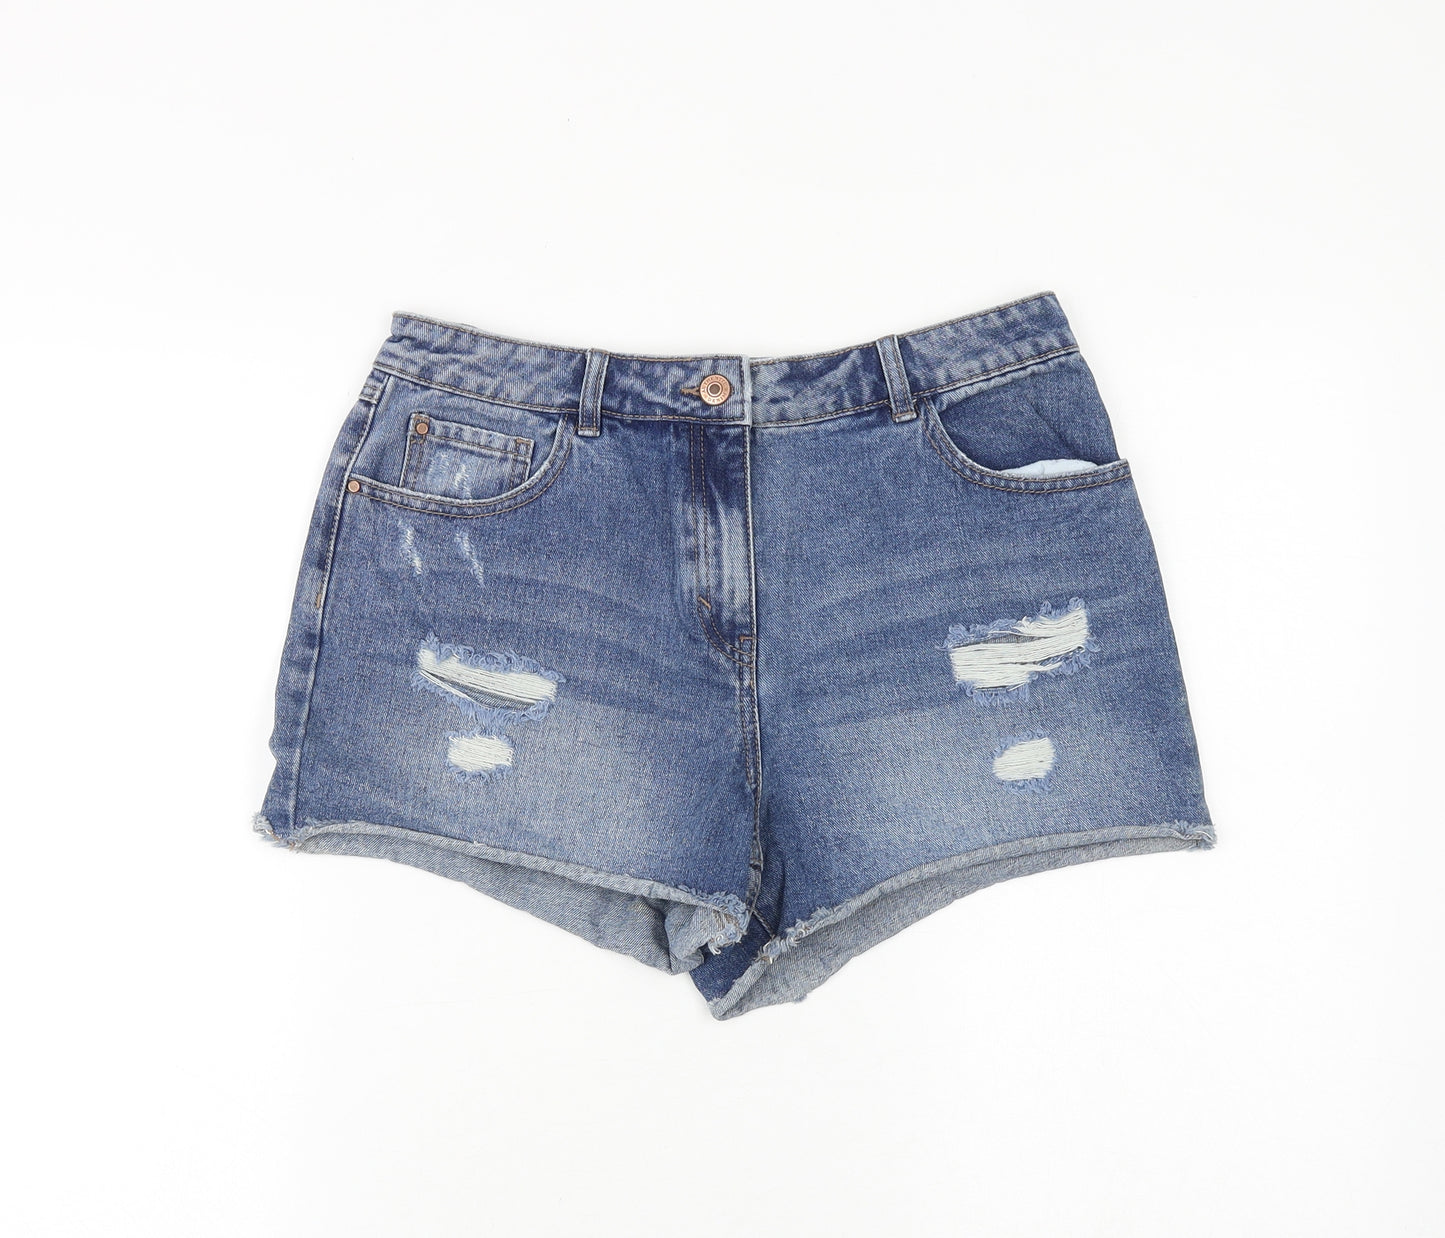 Matalan Womens Blue Cotton Cut-Off Shorts Size 10 Regular Zip - Distressed